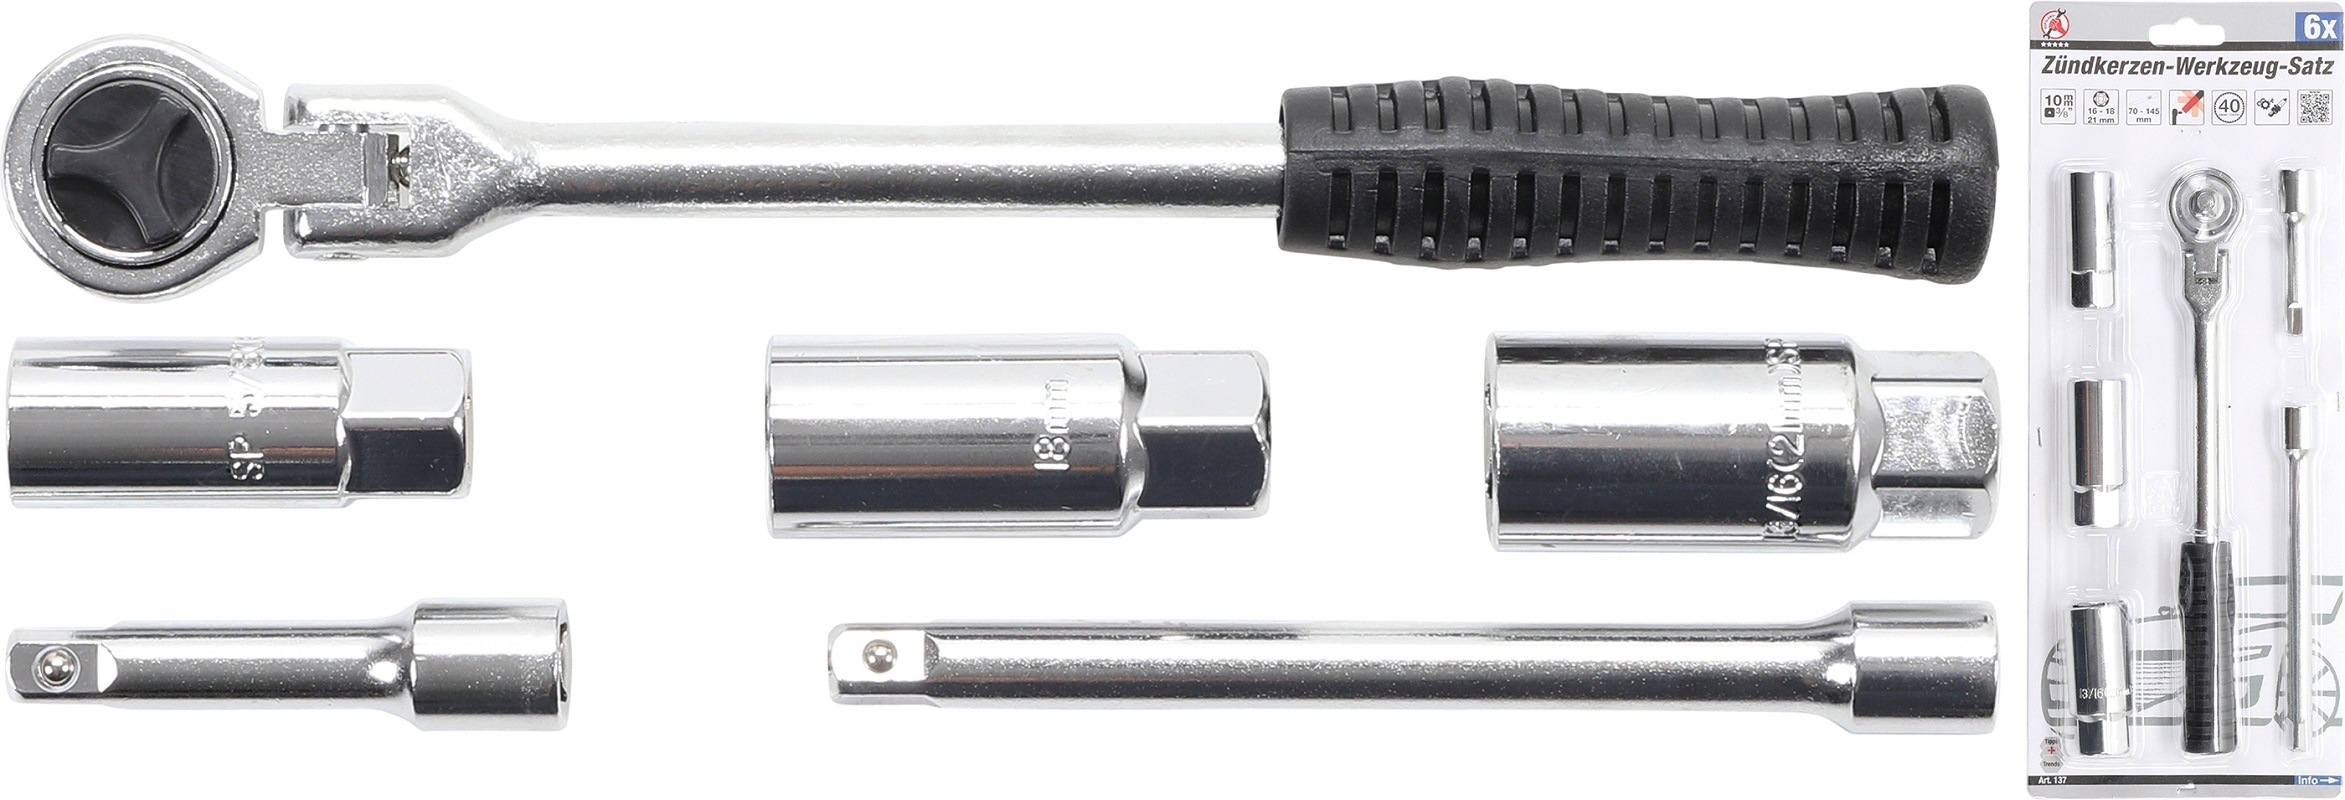 Zündkerzen-Werkzeug-Satz | Antrieb 10 mm (3/8") | 6-tlg. - BGS 137